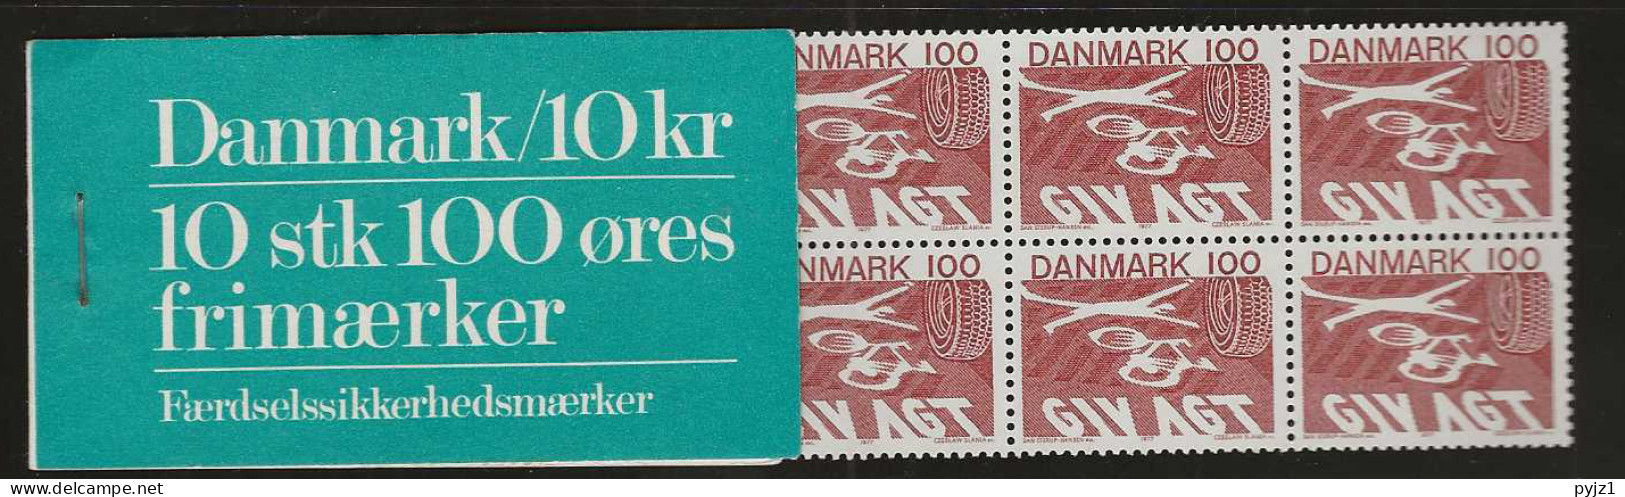 1977 MNH Danmark, Booklet, Facit HS 20 - Markenheftchen